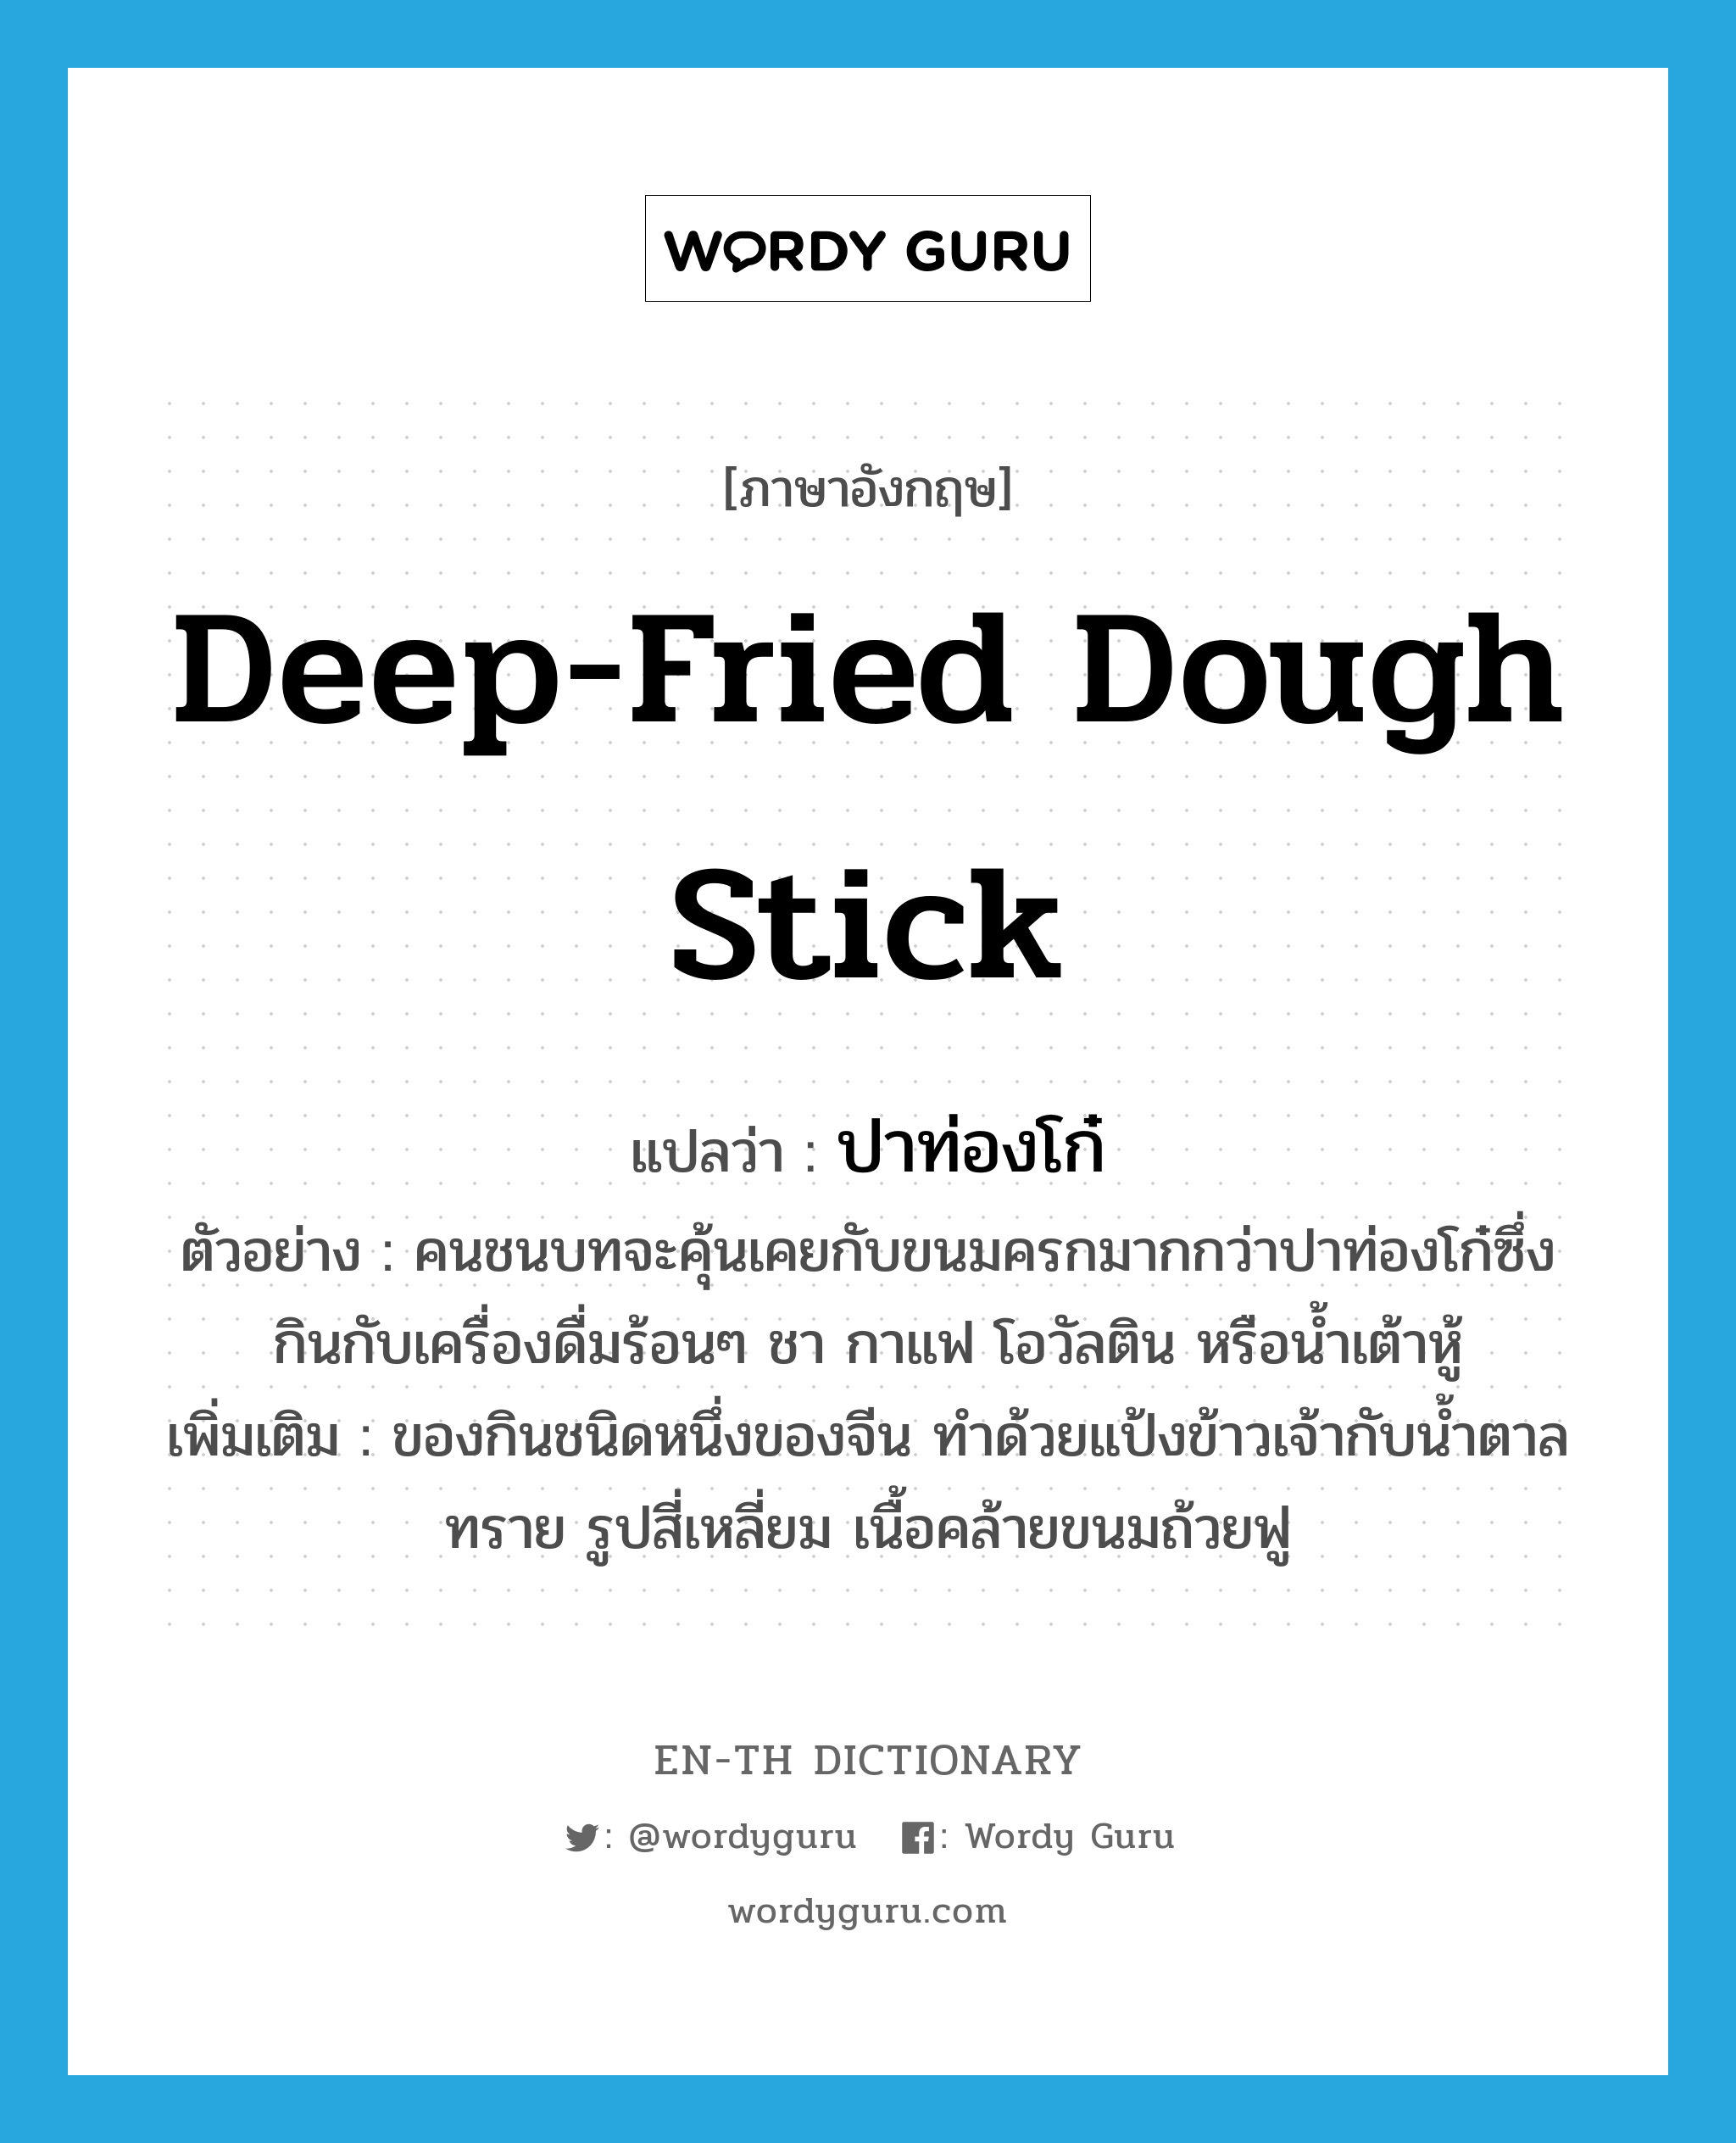 deep-fried dough stick แปลว่า?, คำศัพท์ภาษาอังกฤษ deep-fried dough stick แปลว่า ปาท่องโก๋ ประเภท N ตัวอย่าง คนชนบทจะคุ้นเคยกับขนมครกมากกว่าปาท่องโก๋ซึ่งกินกับเครื่องดื่มร้อนๆ ชา กาแฟ โอวัลติน หรือน้ำเต้าหู้ เพิ่มเติม ของกินชนิดหนึ่งของจีน ทำด้วยแป้งข้าวเจ้ากับน้ำตาลทราย รูปสี่เหลี่ยม เนื้อคล้ายขนมถ้วยฟู หมวด N